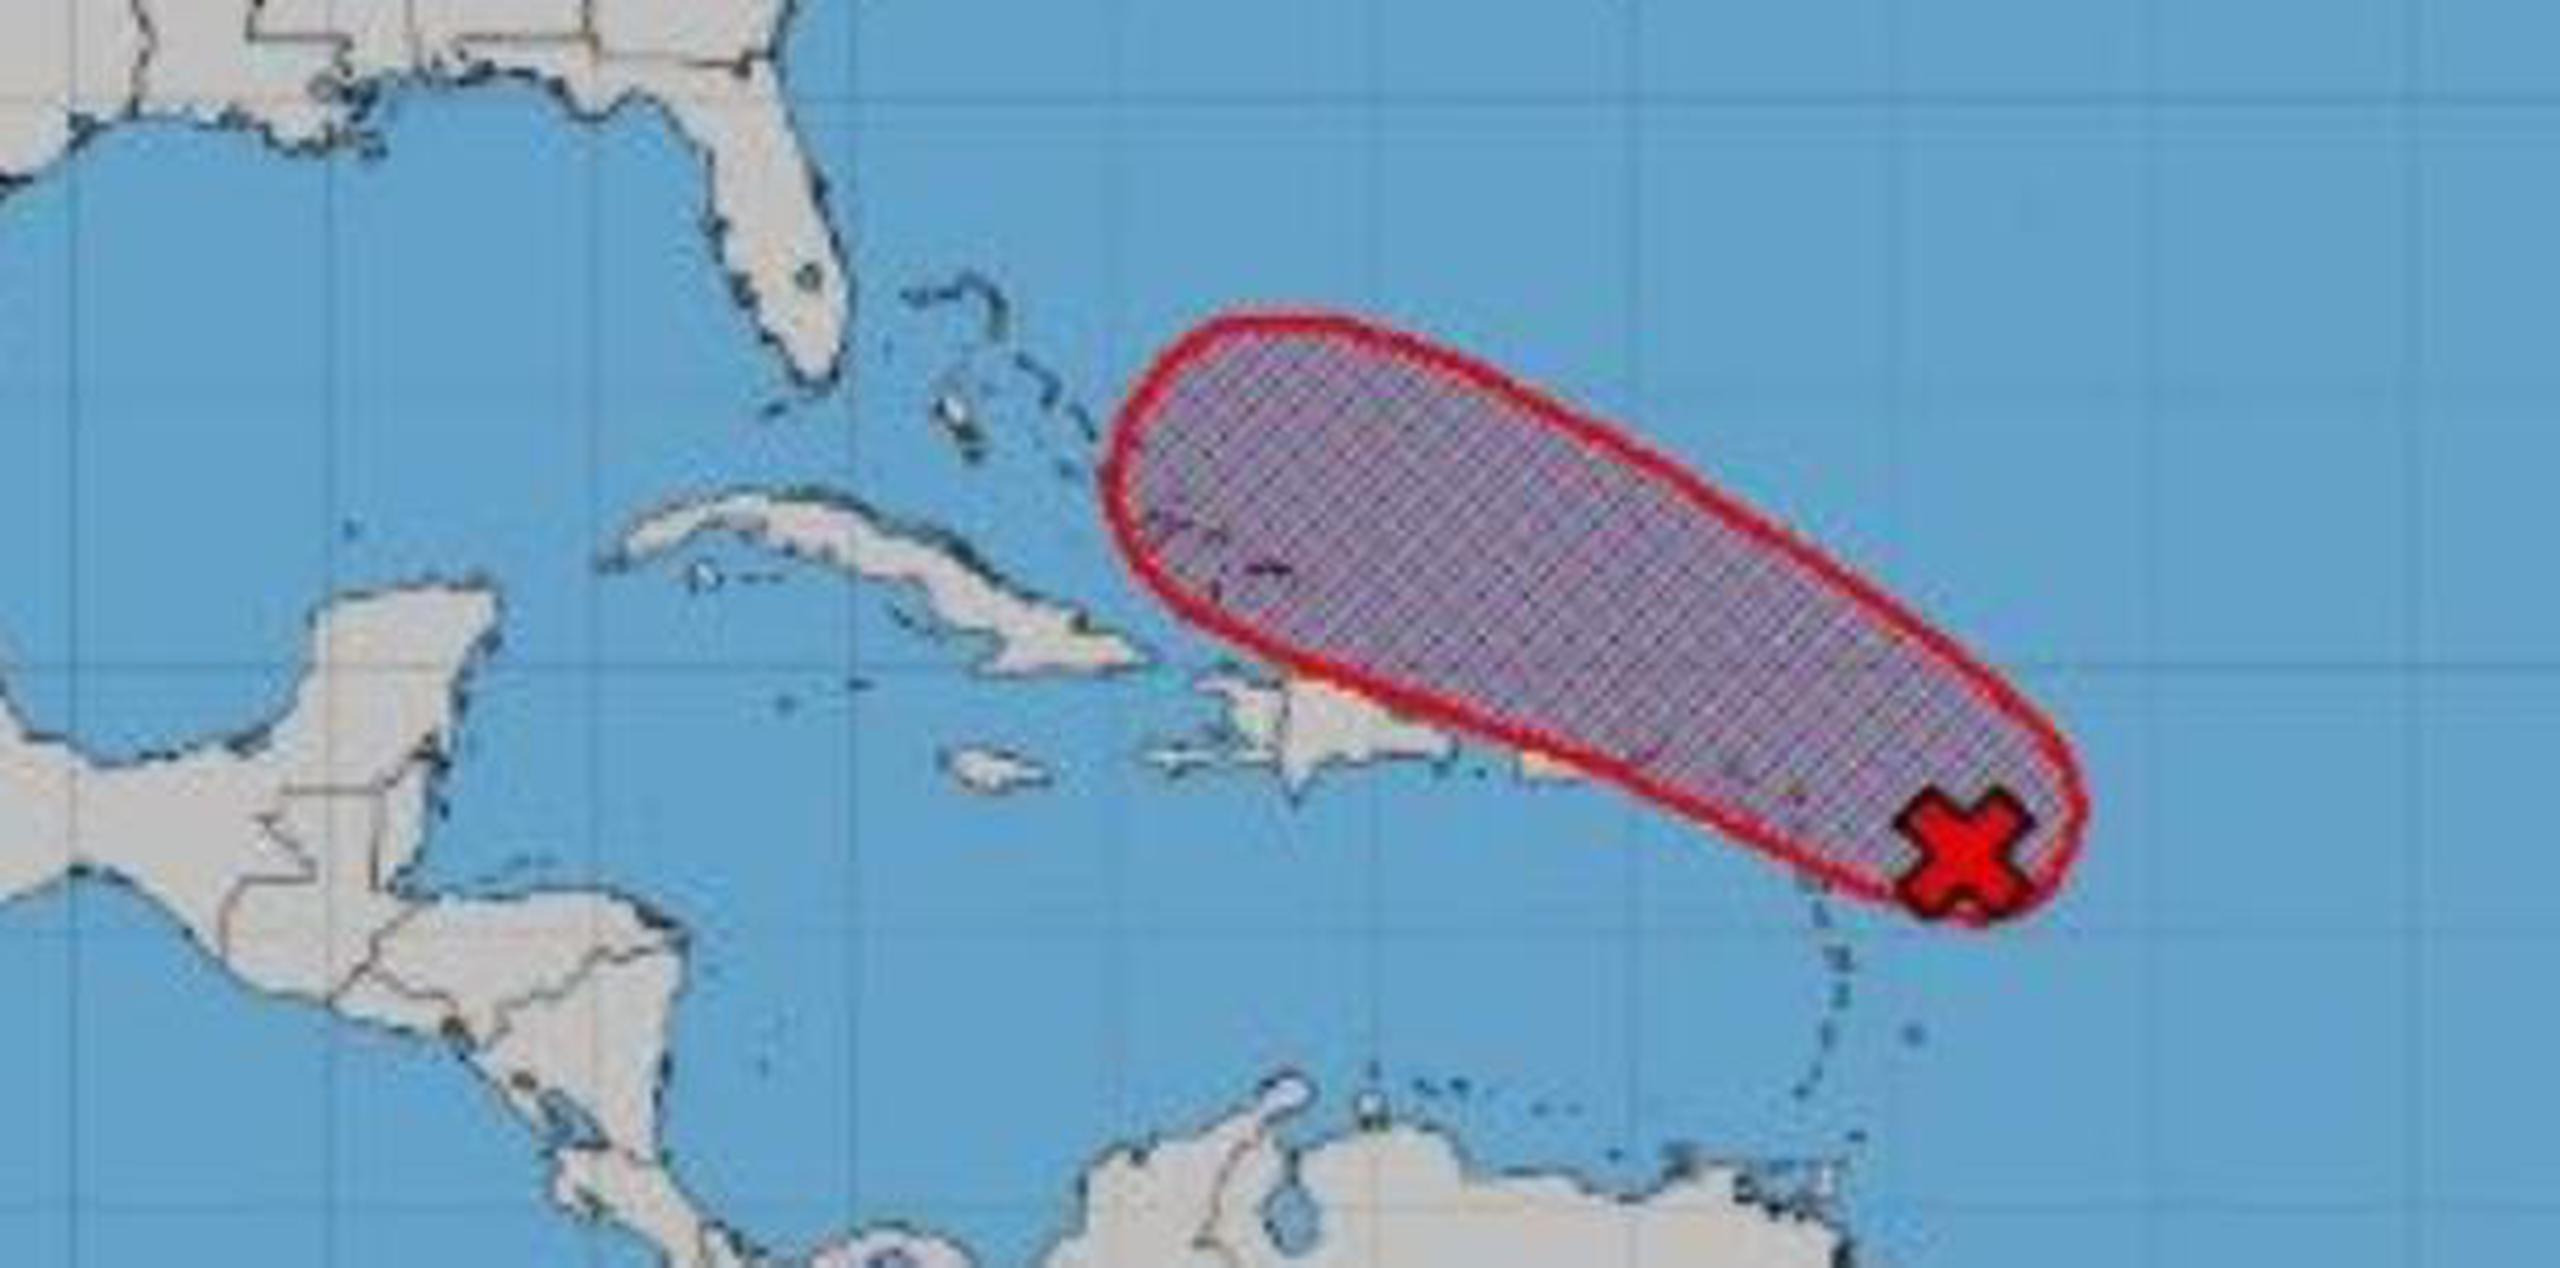 La temporada de huracanes dura hasta el 30 de noviembre. (Twitter)

